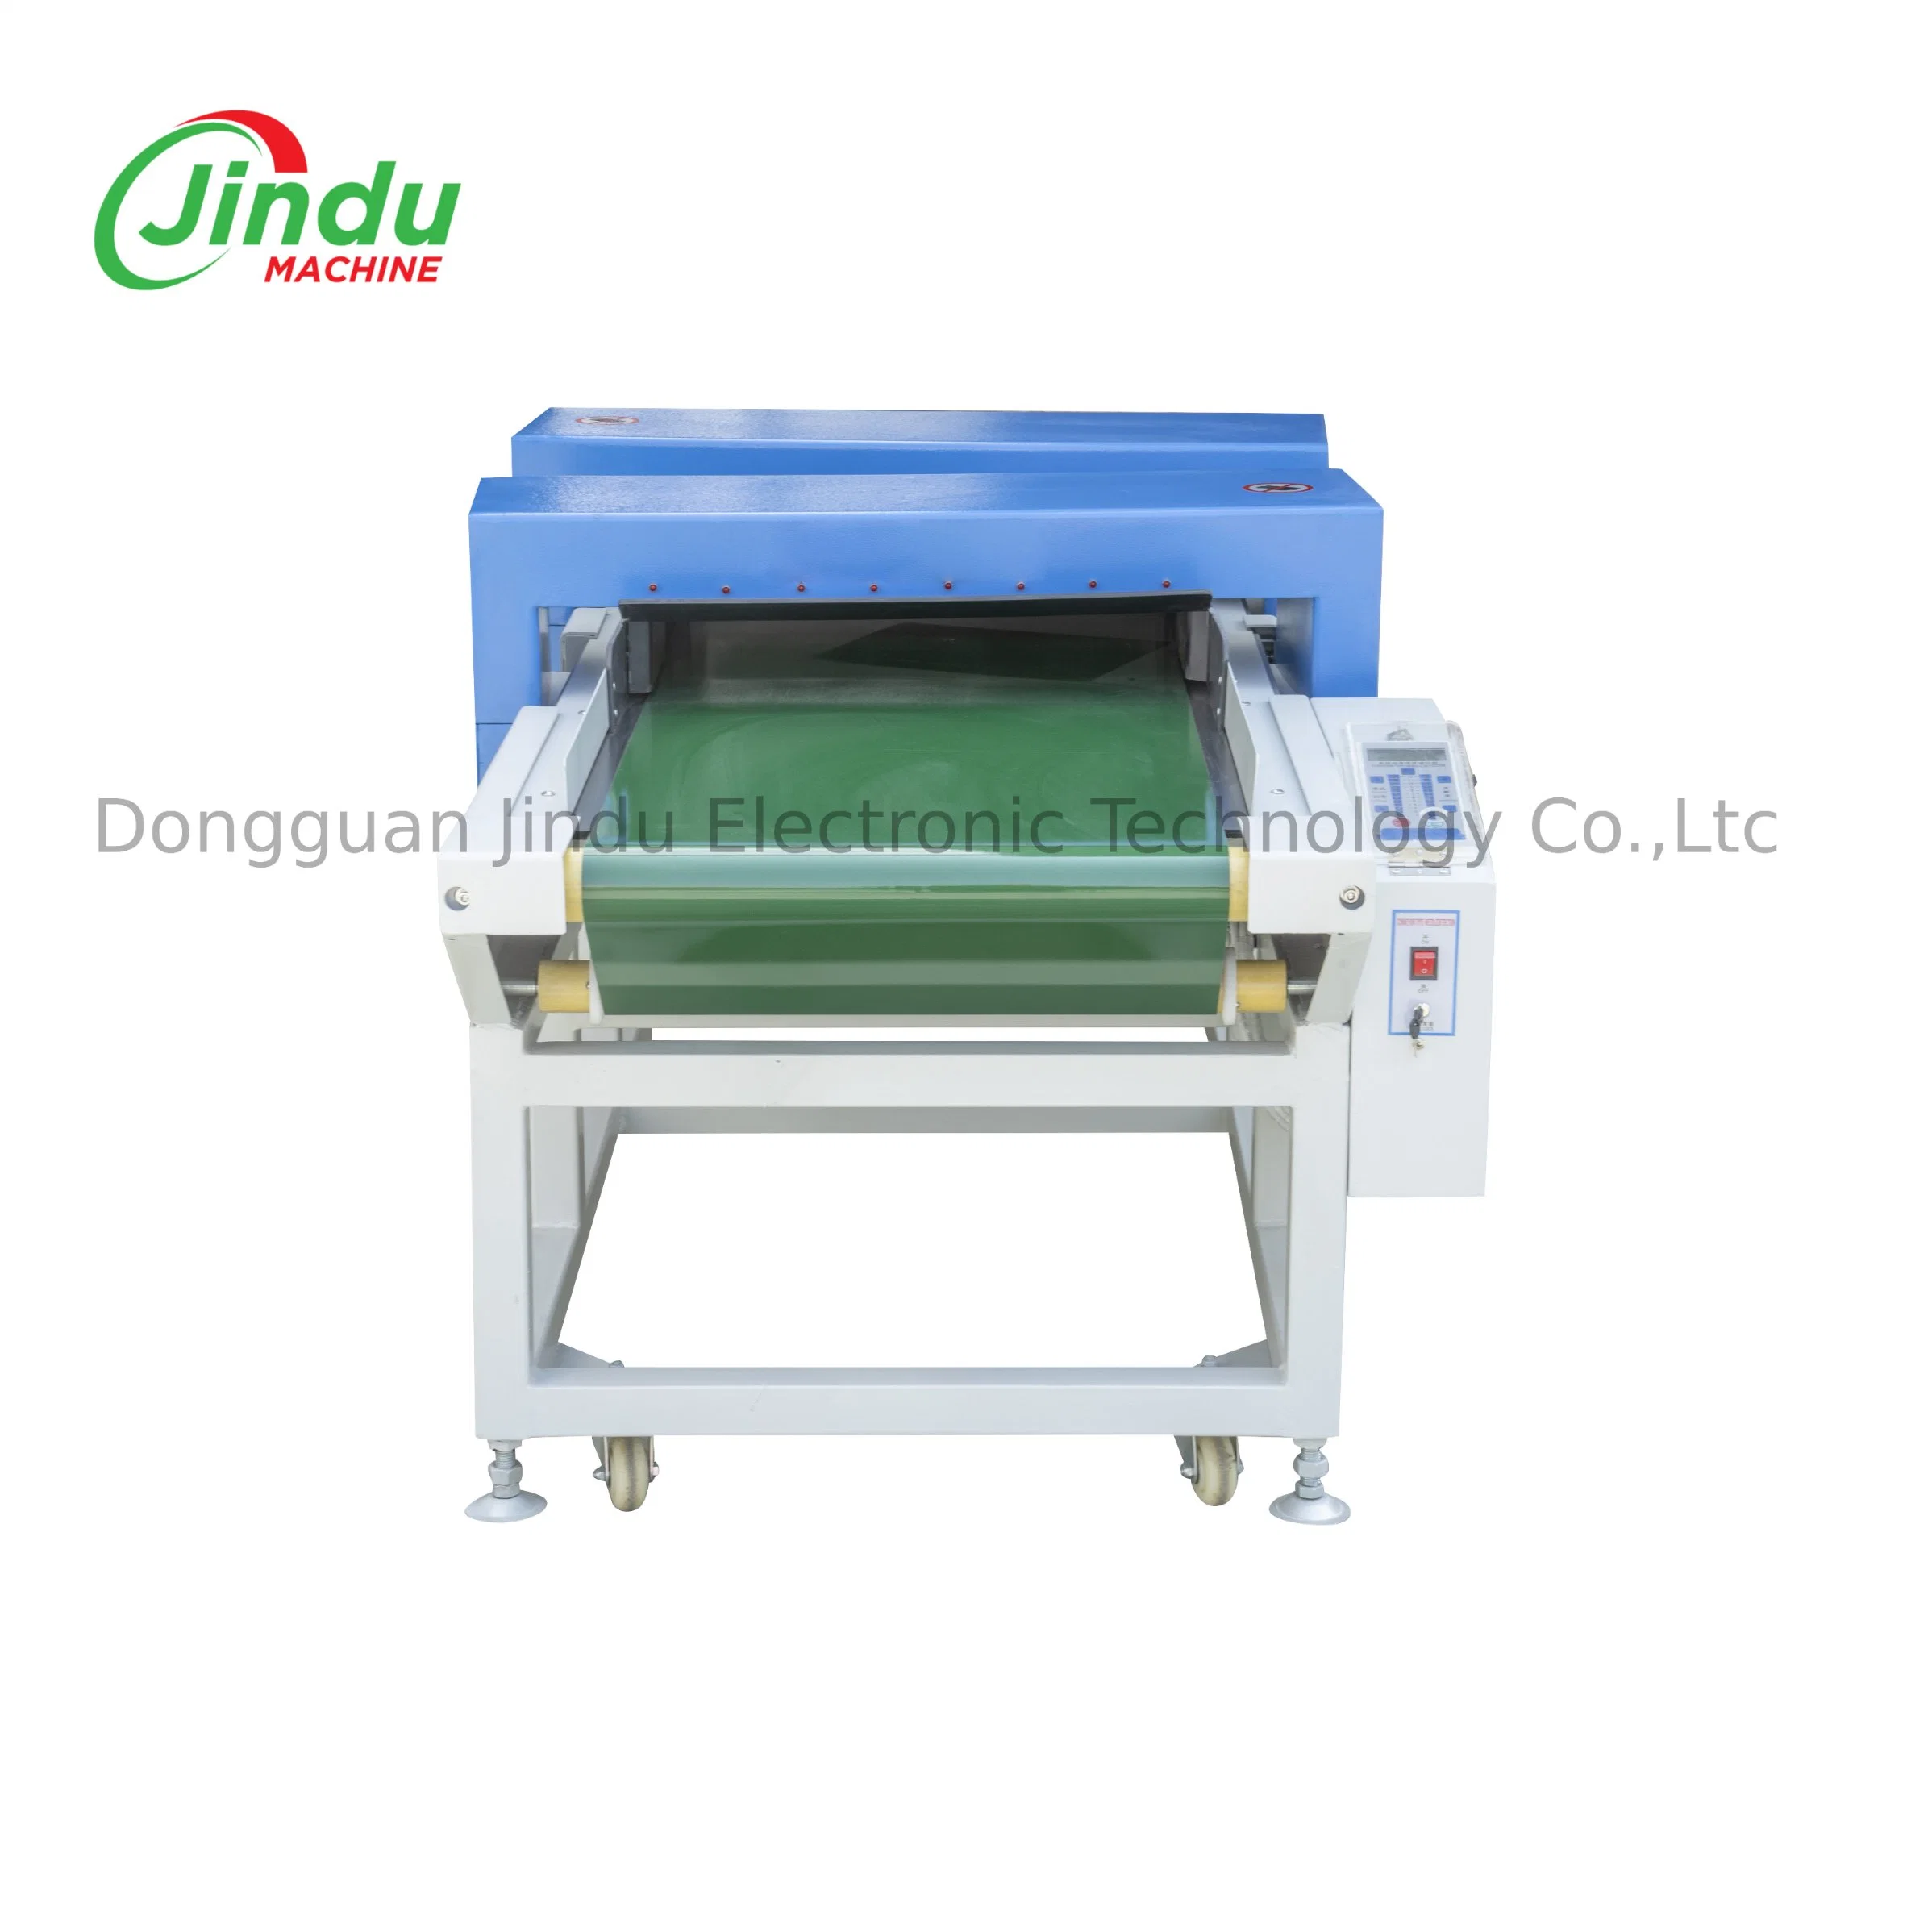 05 Jindu máquina para máquina de Detector de agulha para vestuário de metal da indústria de vestuário têxtil do tapete